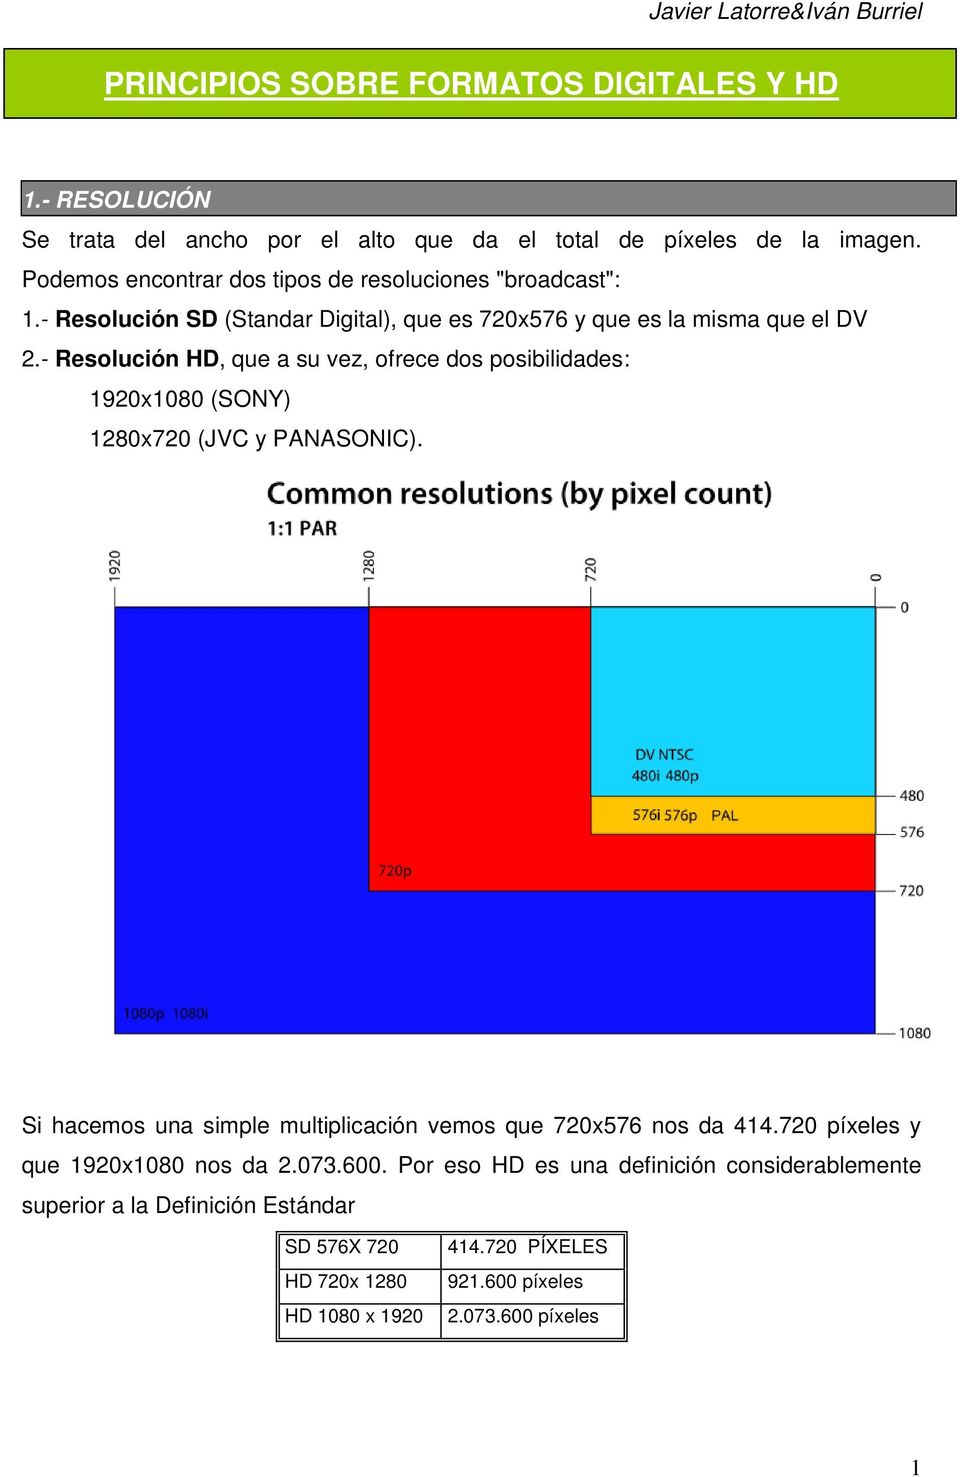 - Resolución HD, que a su vez, ofrece dos posibilidades: 1920x1080 (SONY) 1280x720 (JVC y PANASONIC).